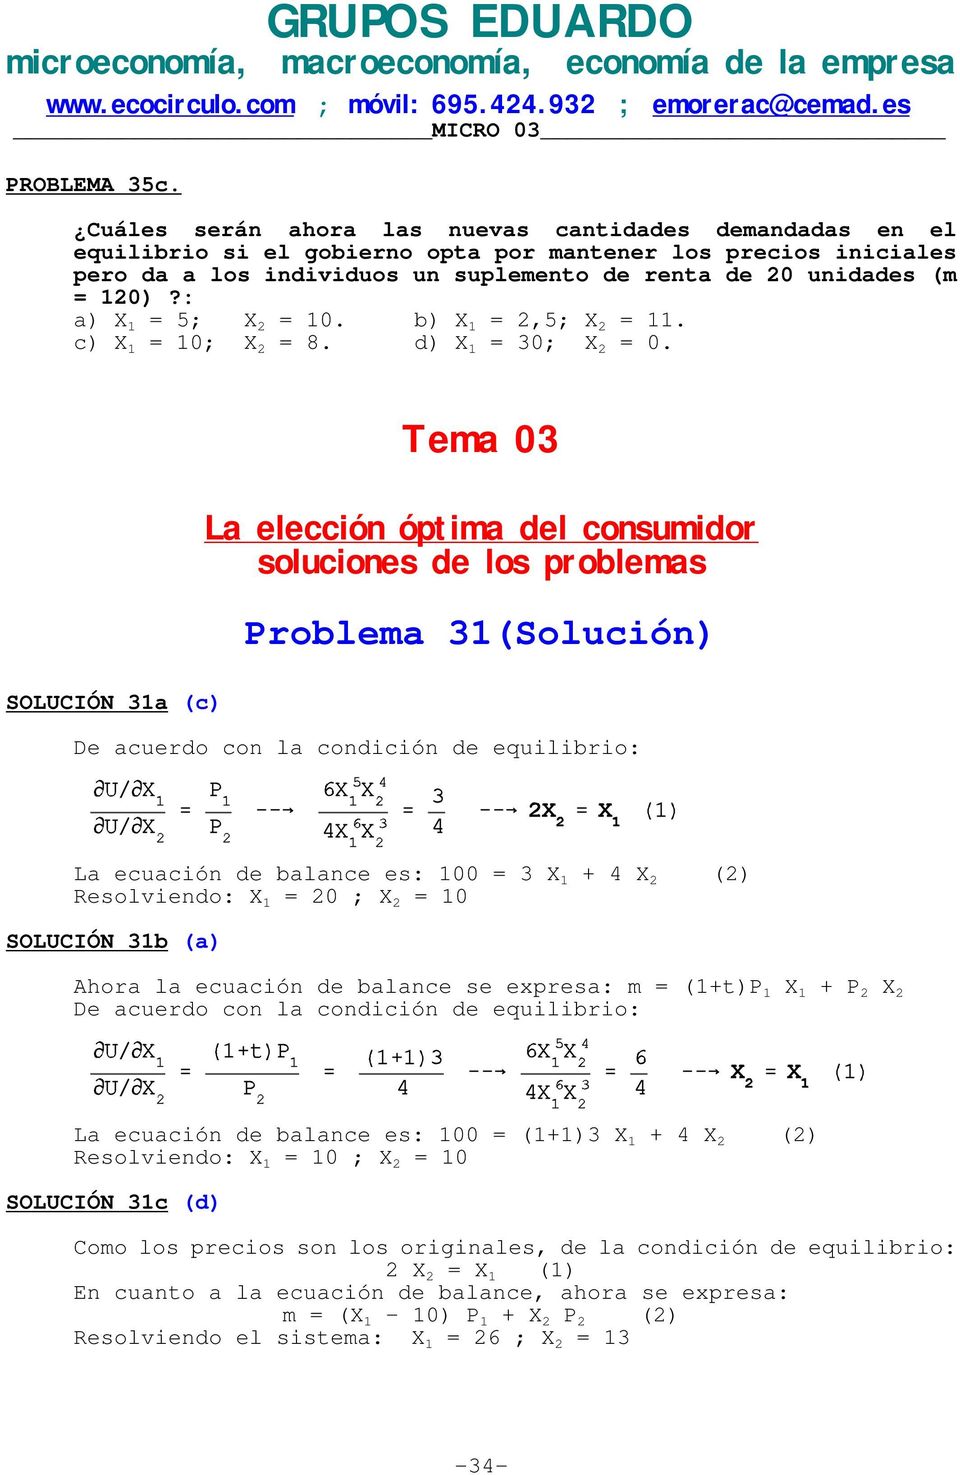 : a) X 1 = 5; X 2 = 10. b) X 1 = 2,5; X 2 = 11. c) X 1 = 10; X 2 = 8. d) X 1 = 30; X 2 = 0.